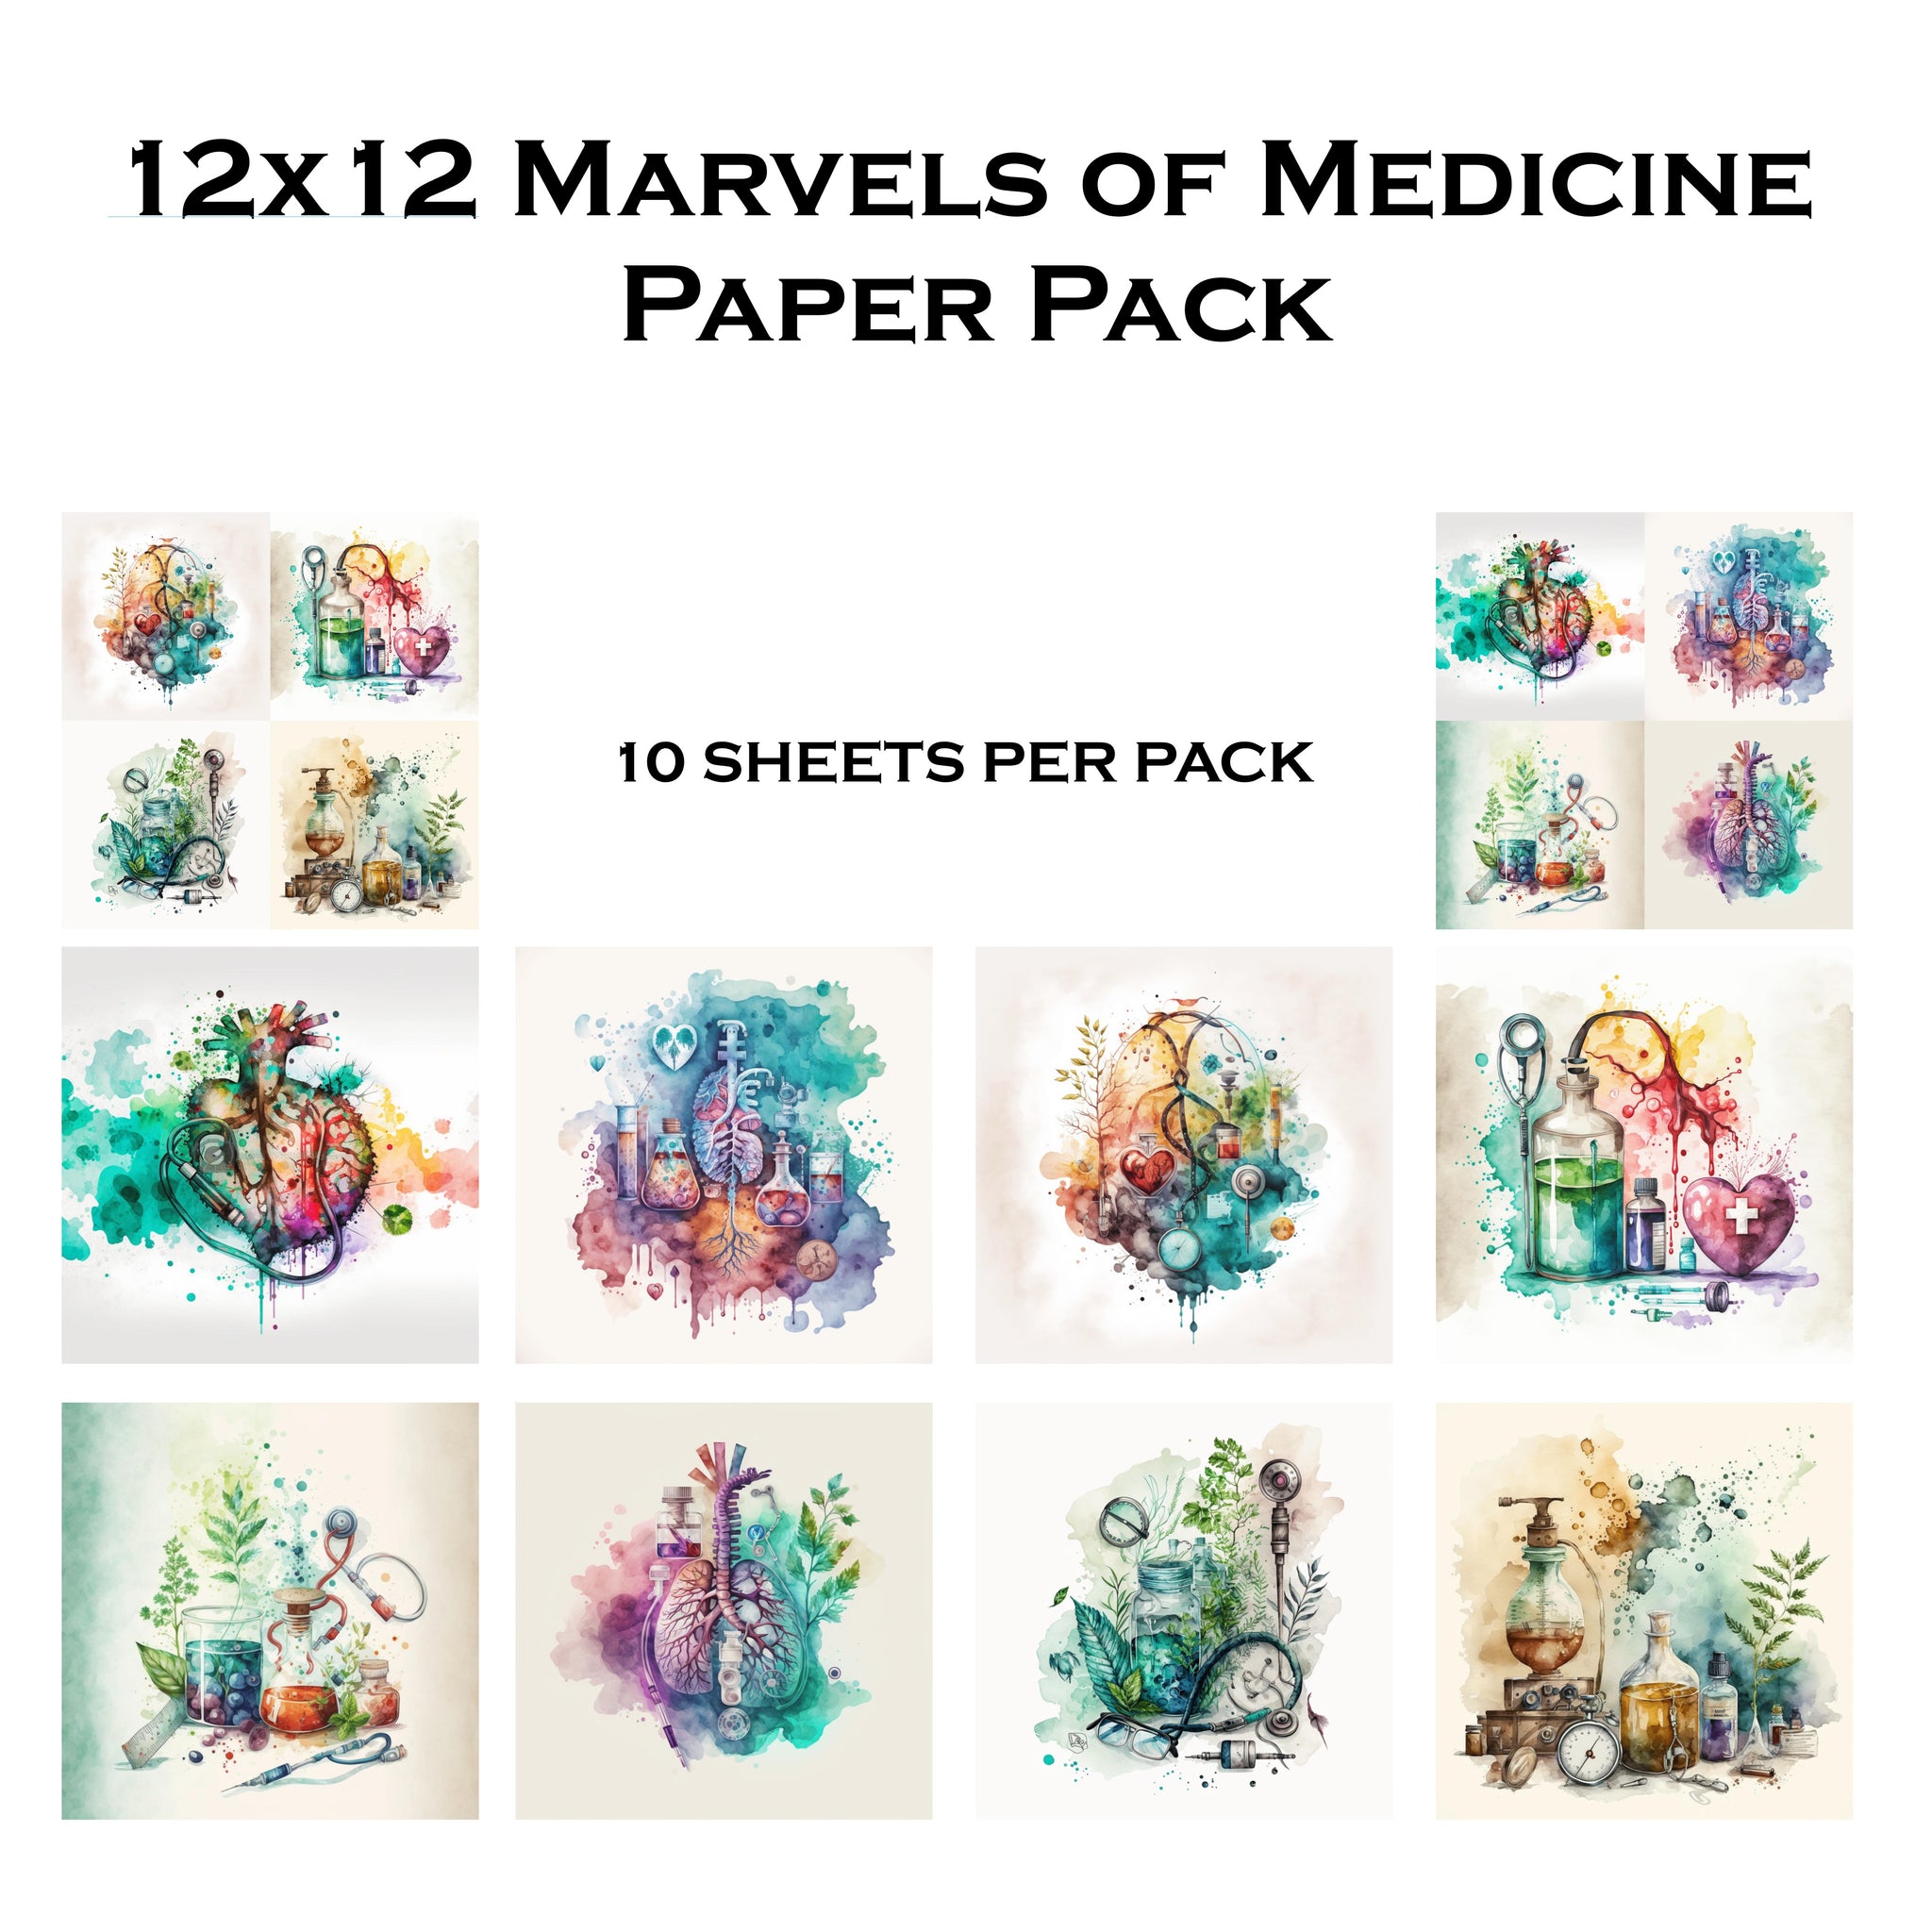 Marvels of Medicine 12x12 Paper Pack